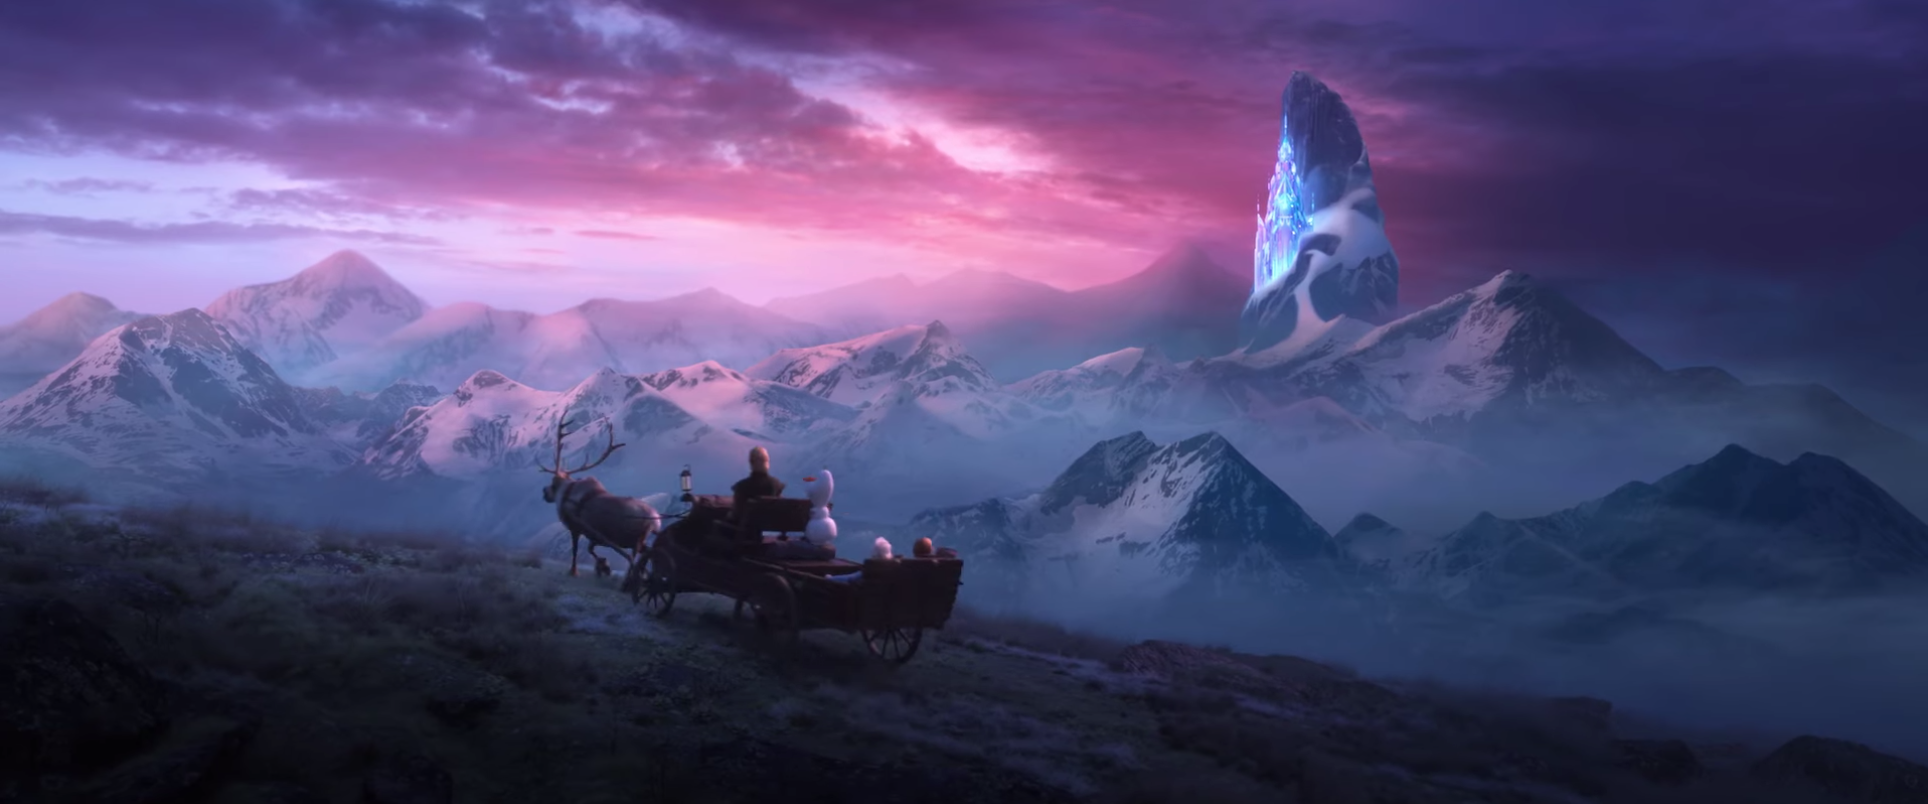 Frozen 2 tung trailer hoành tráng chẳng khác nào phim siêu anh hùng - Ảnh 5.